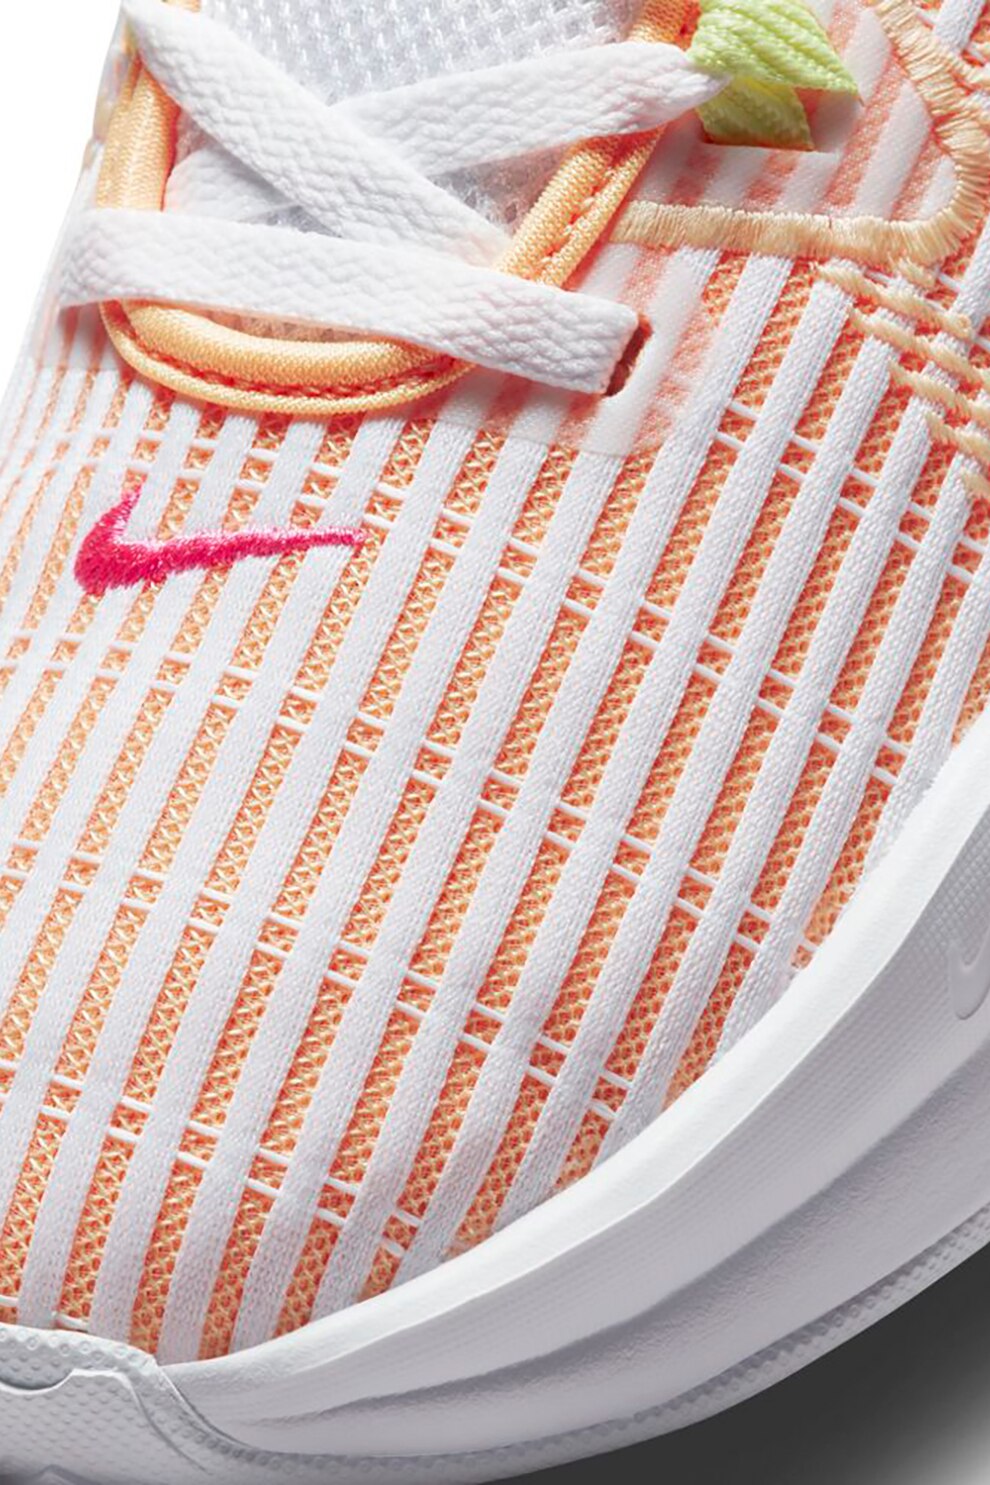 Nike, Lebron Witness VI colorblock dizájnos kosárlabdacipő, Fehér ...